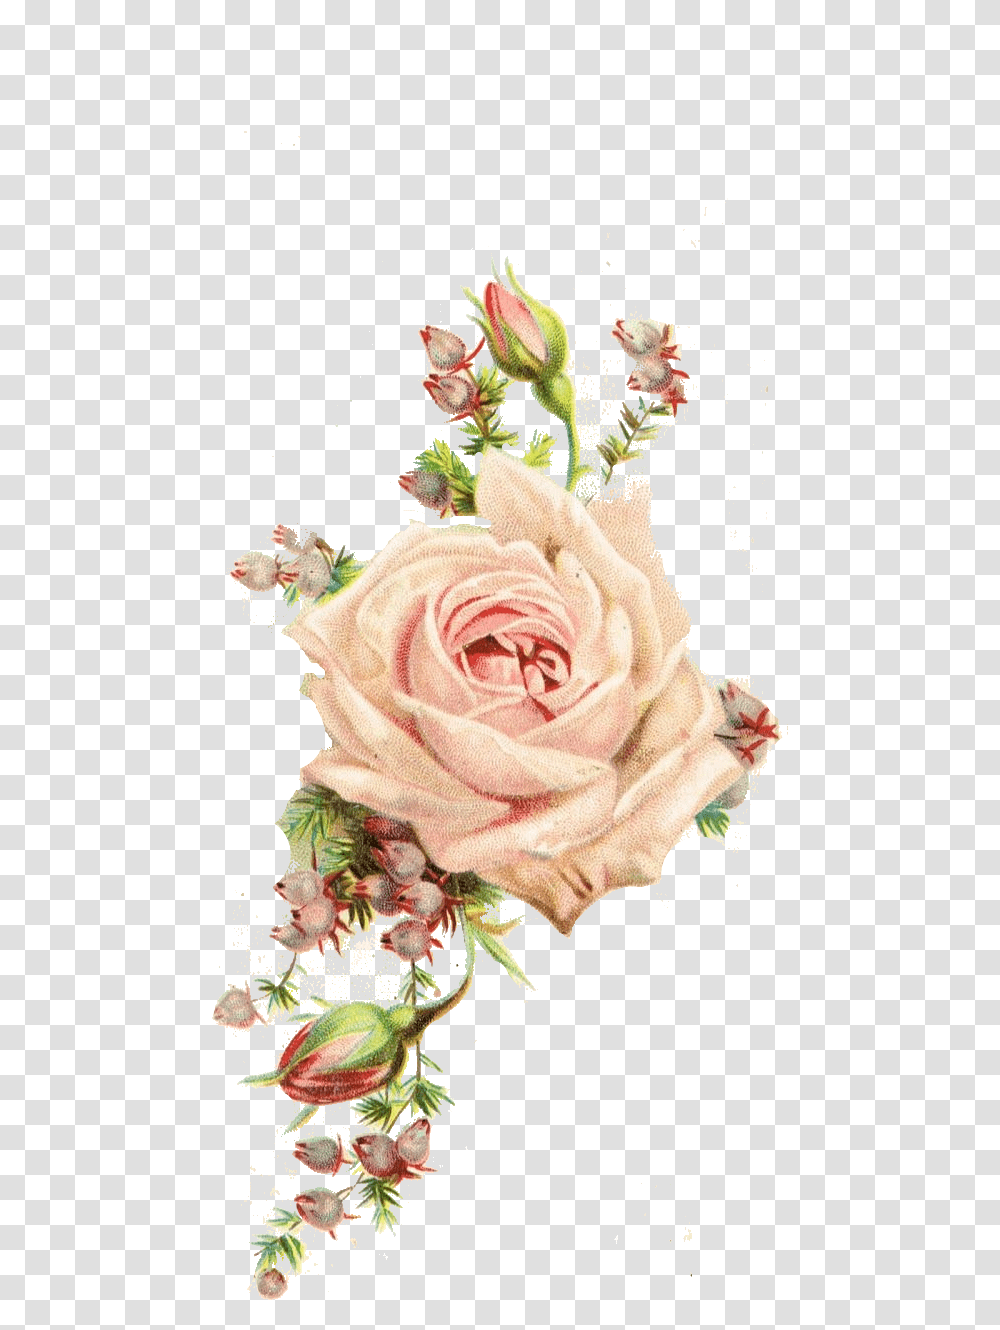 Download Vintage Flowers Background Hd Background Vintage Flowers, Plant, Rose, Blossom, Flower Arrangement Transparent Png